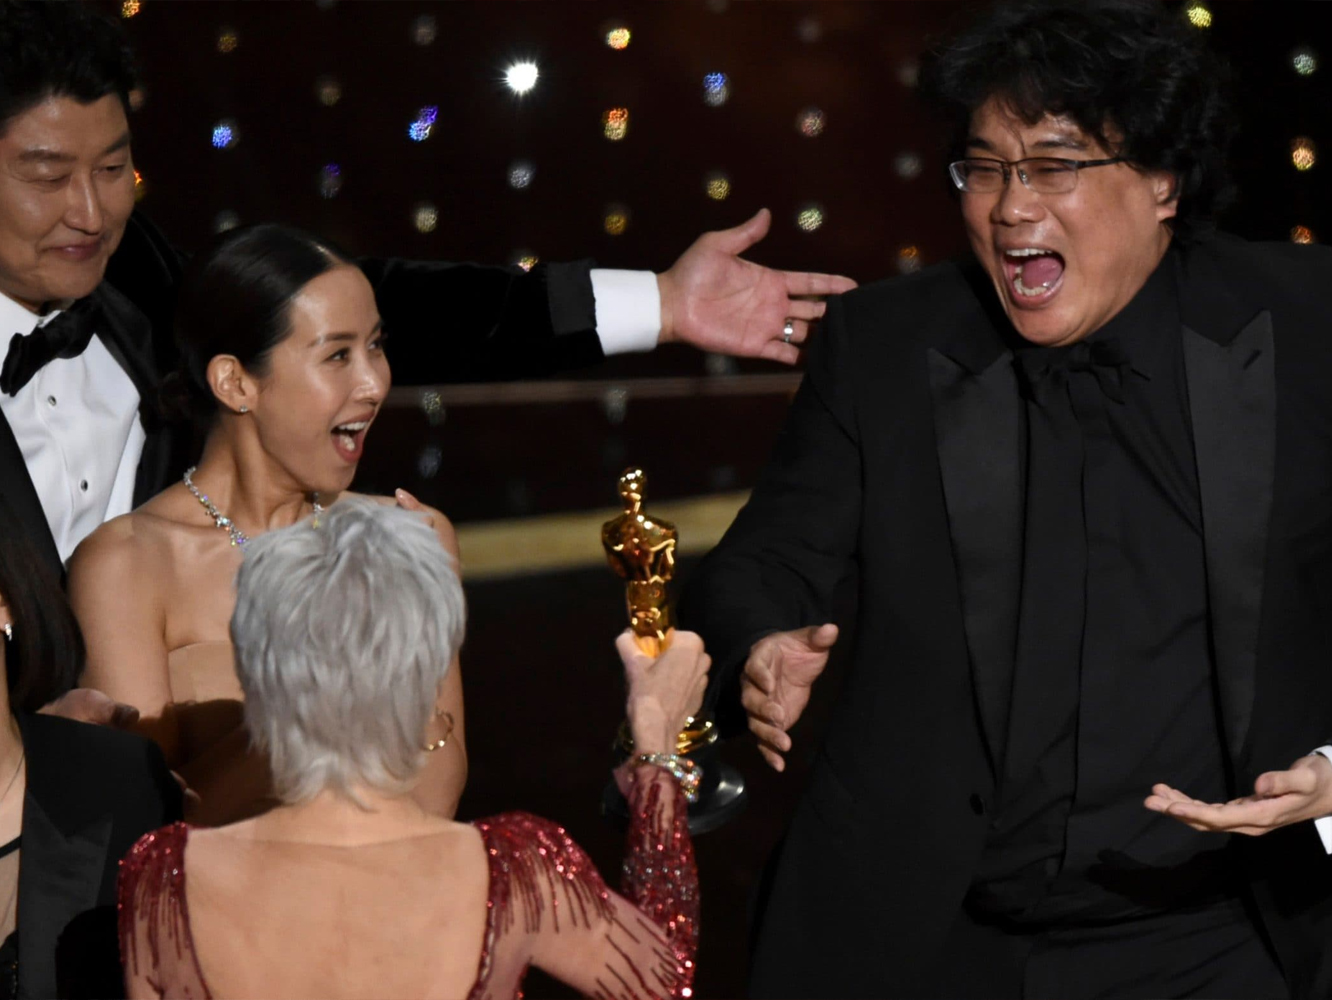  Premios Oscar 2020 | ‘Parasite’ da el sorpasso al cine americano y se lleva 4 Oscars, incluyendo el de Película